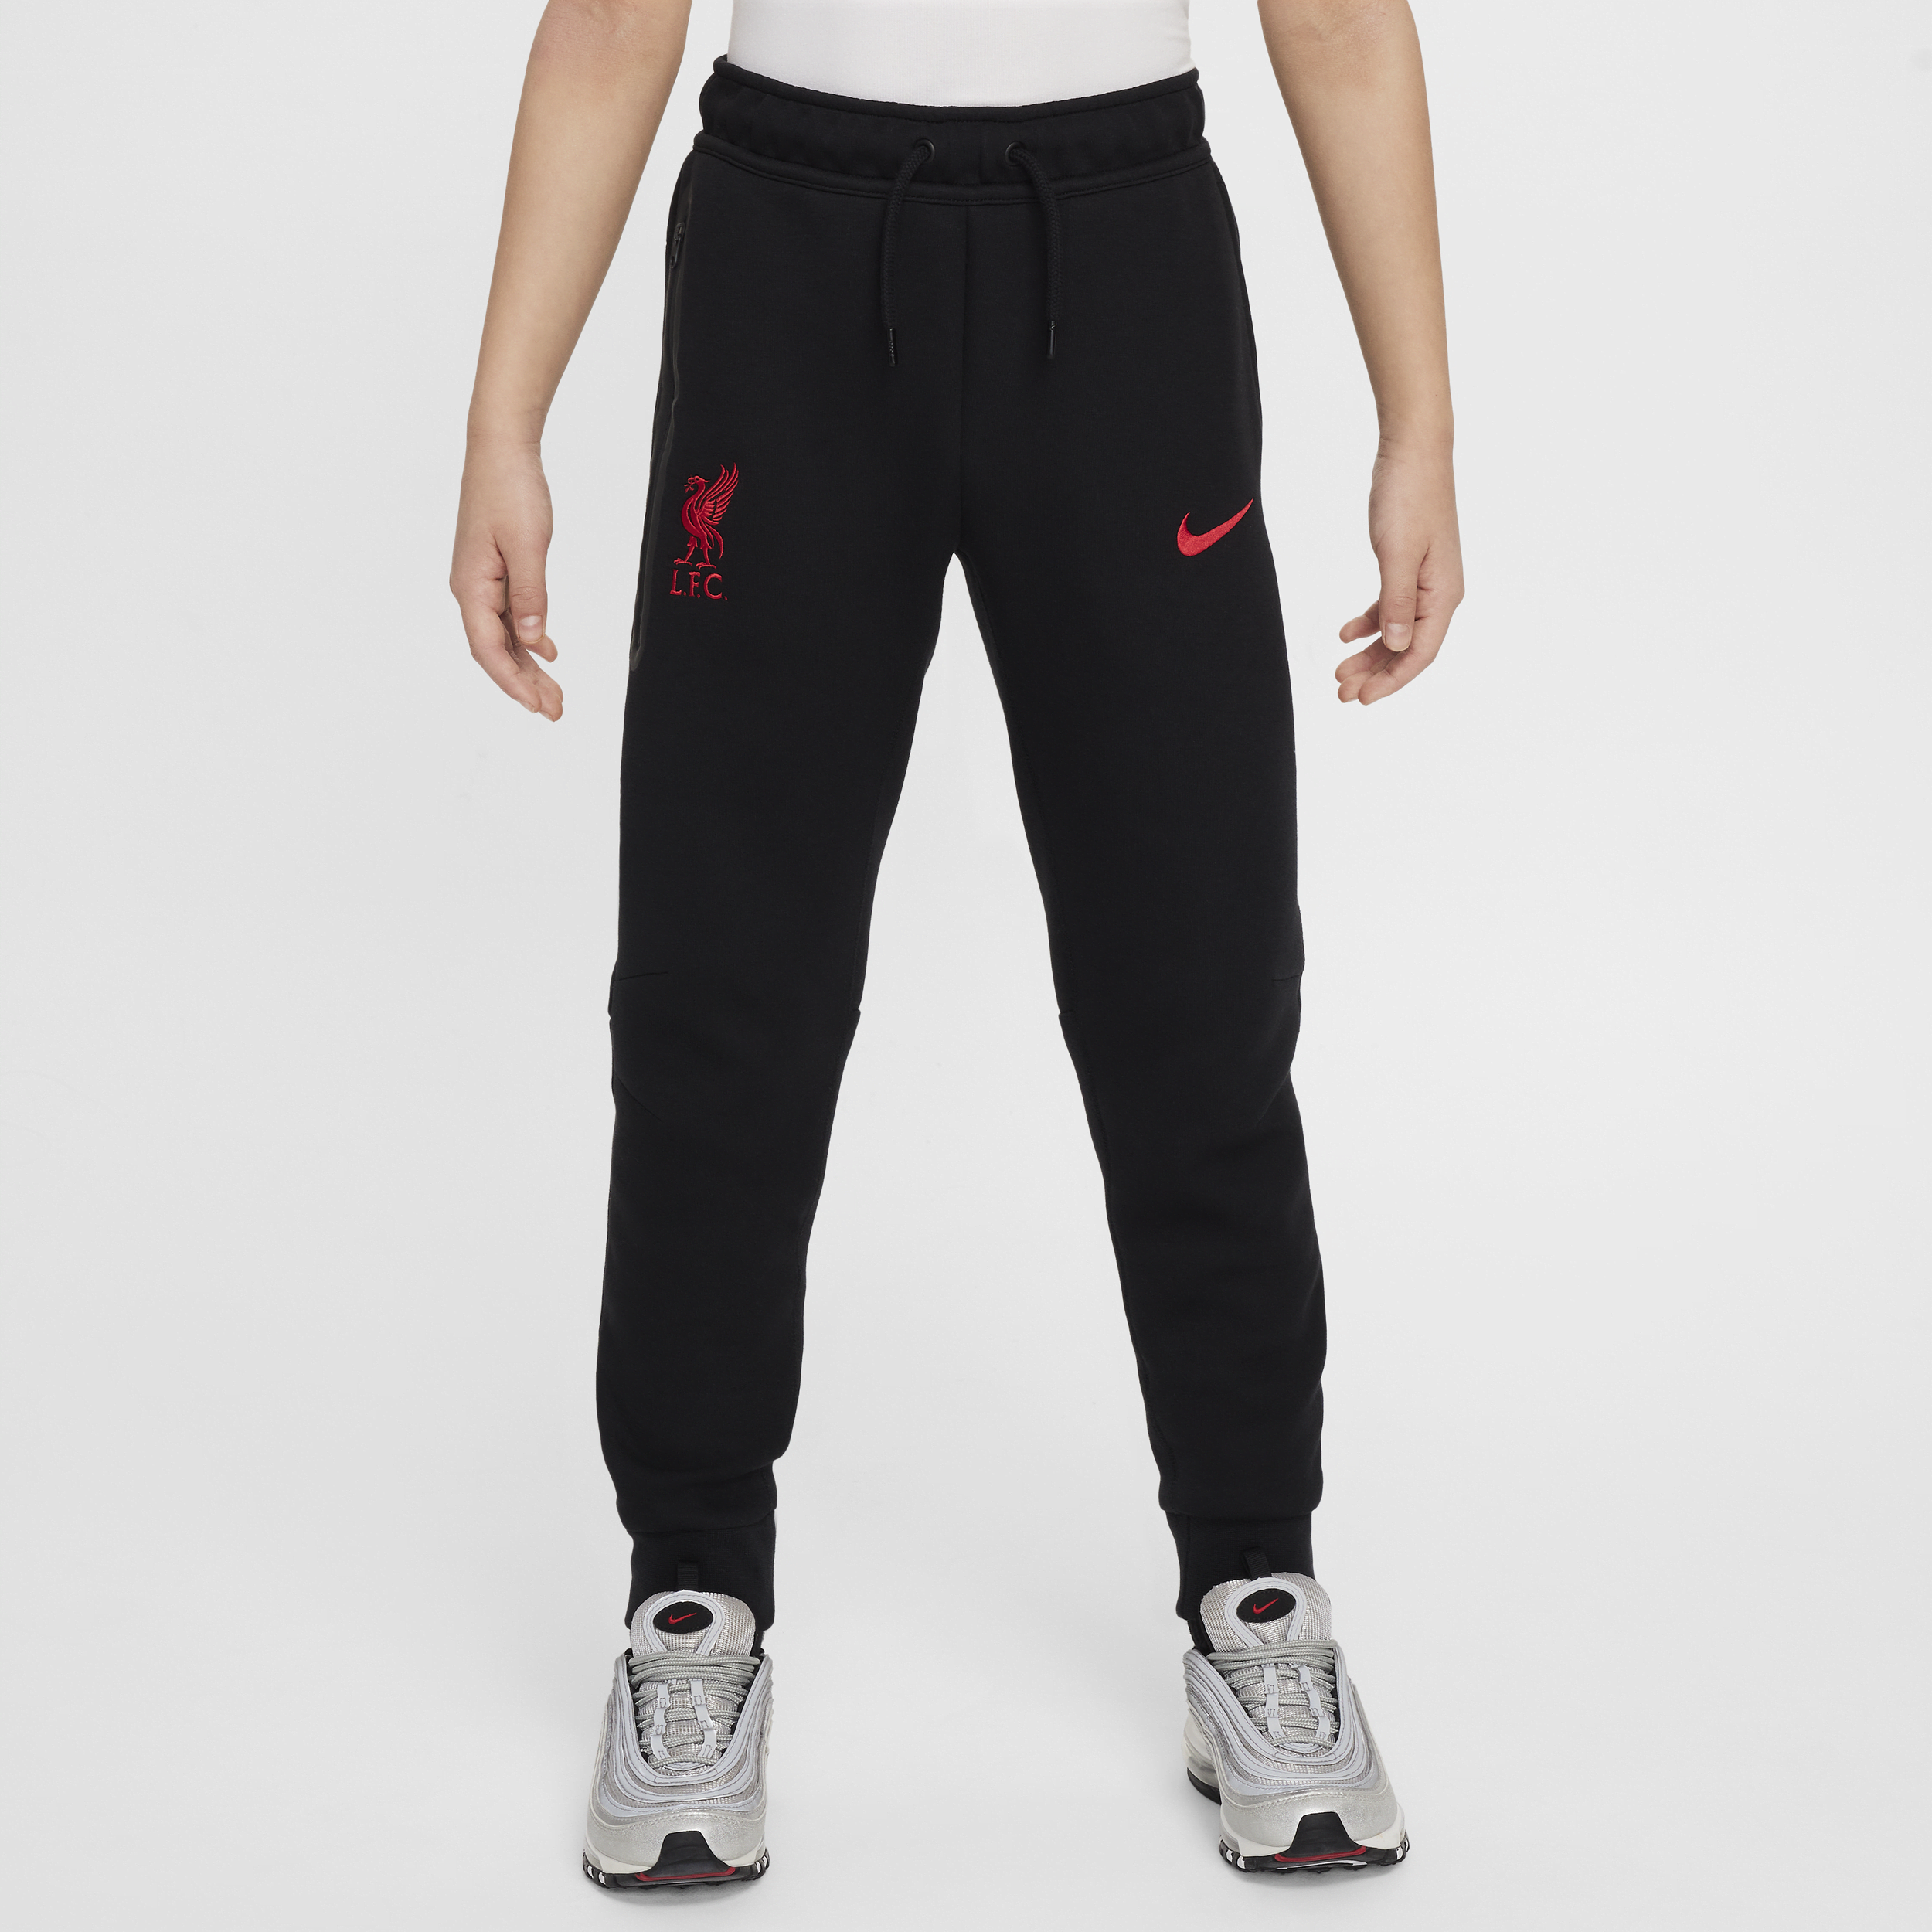 Liverpool FC Tech Fleece Nike-fodboldbukser til større børn (drenge) - sort